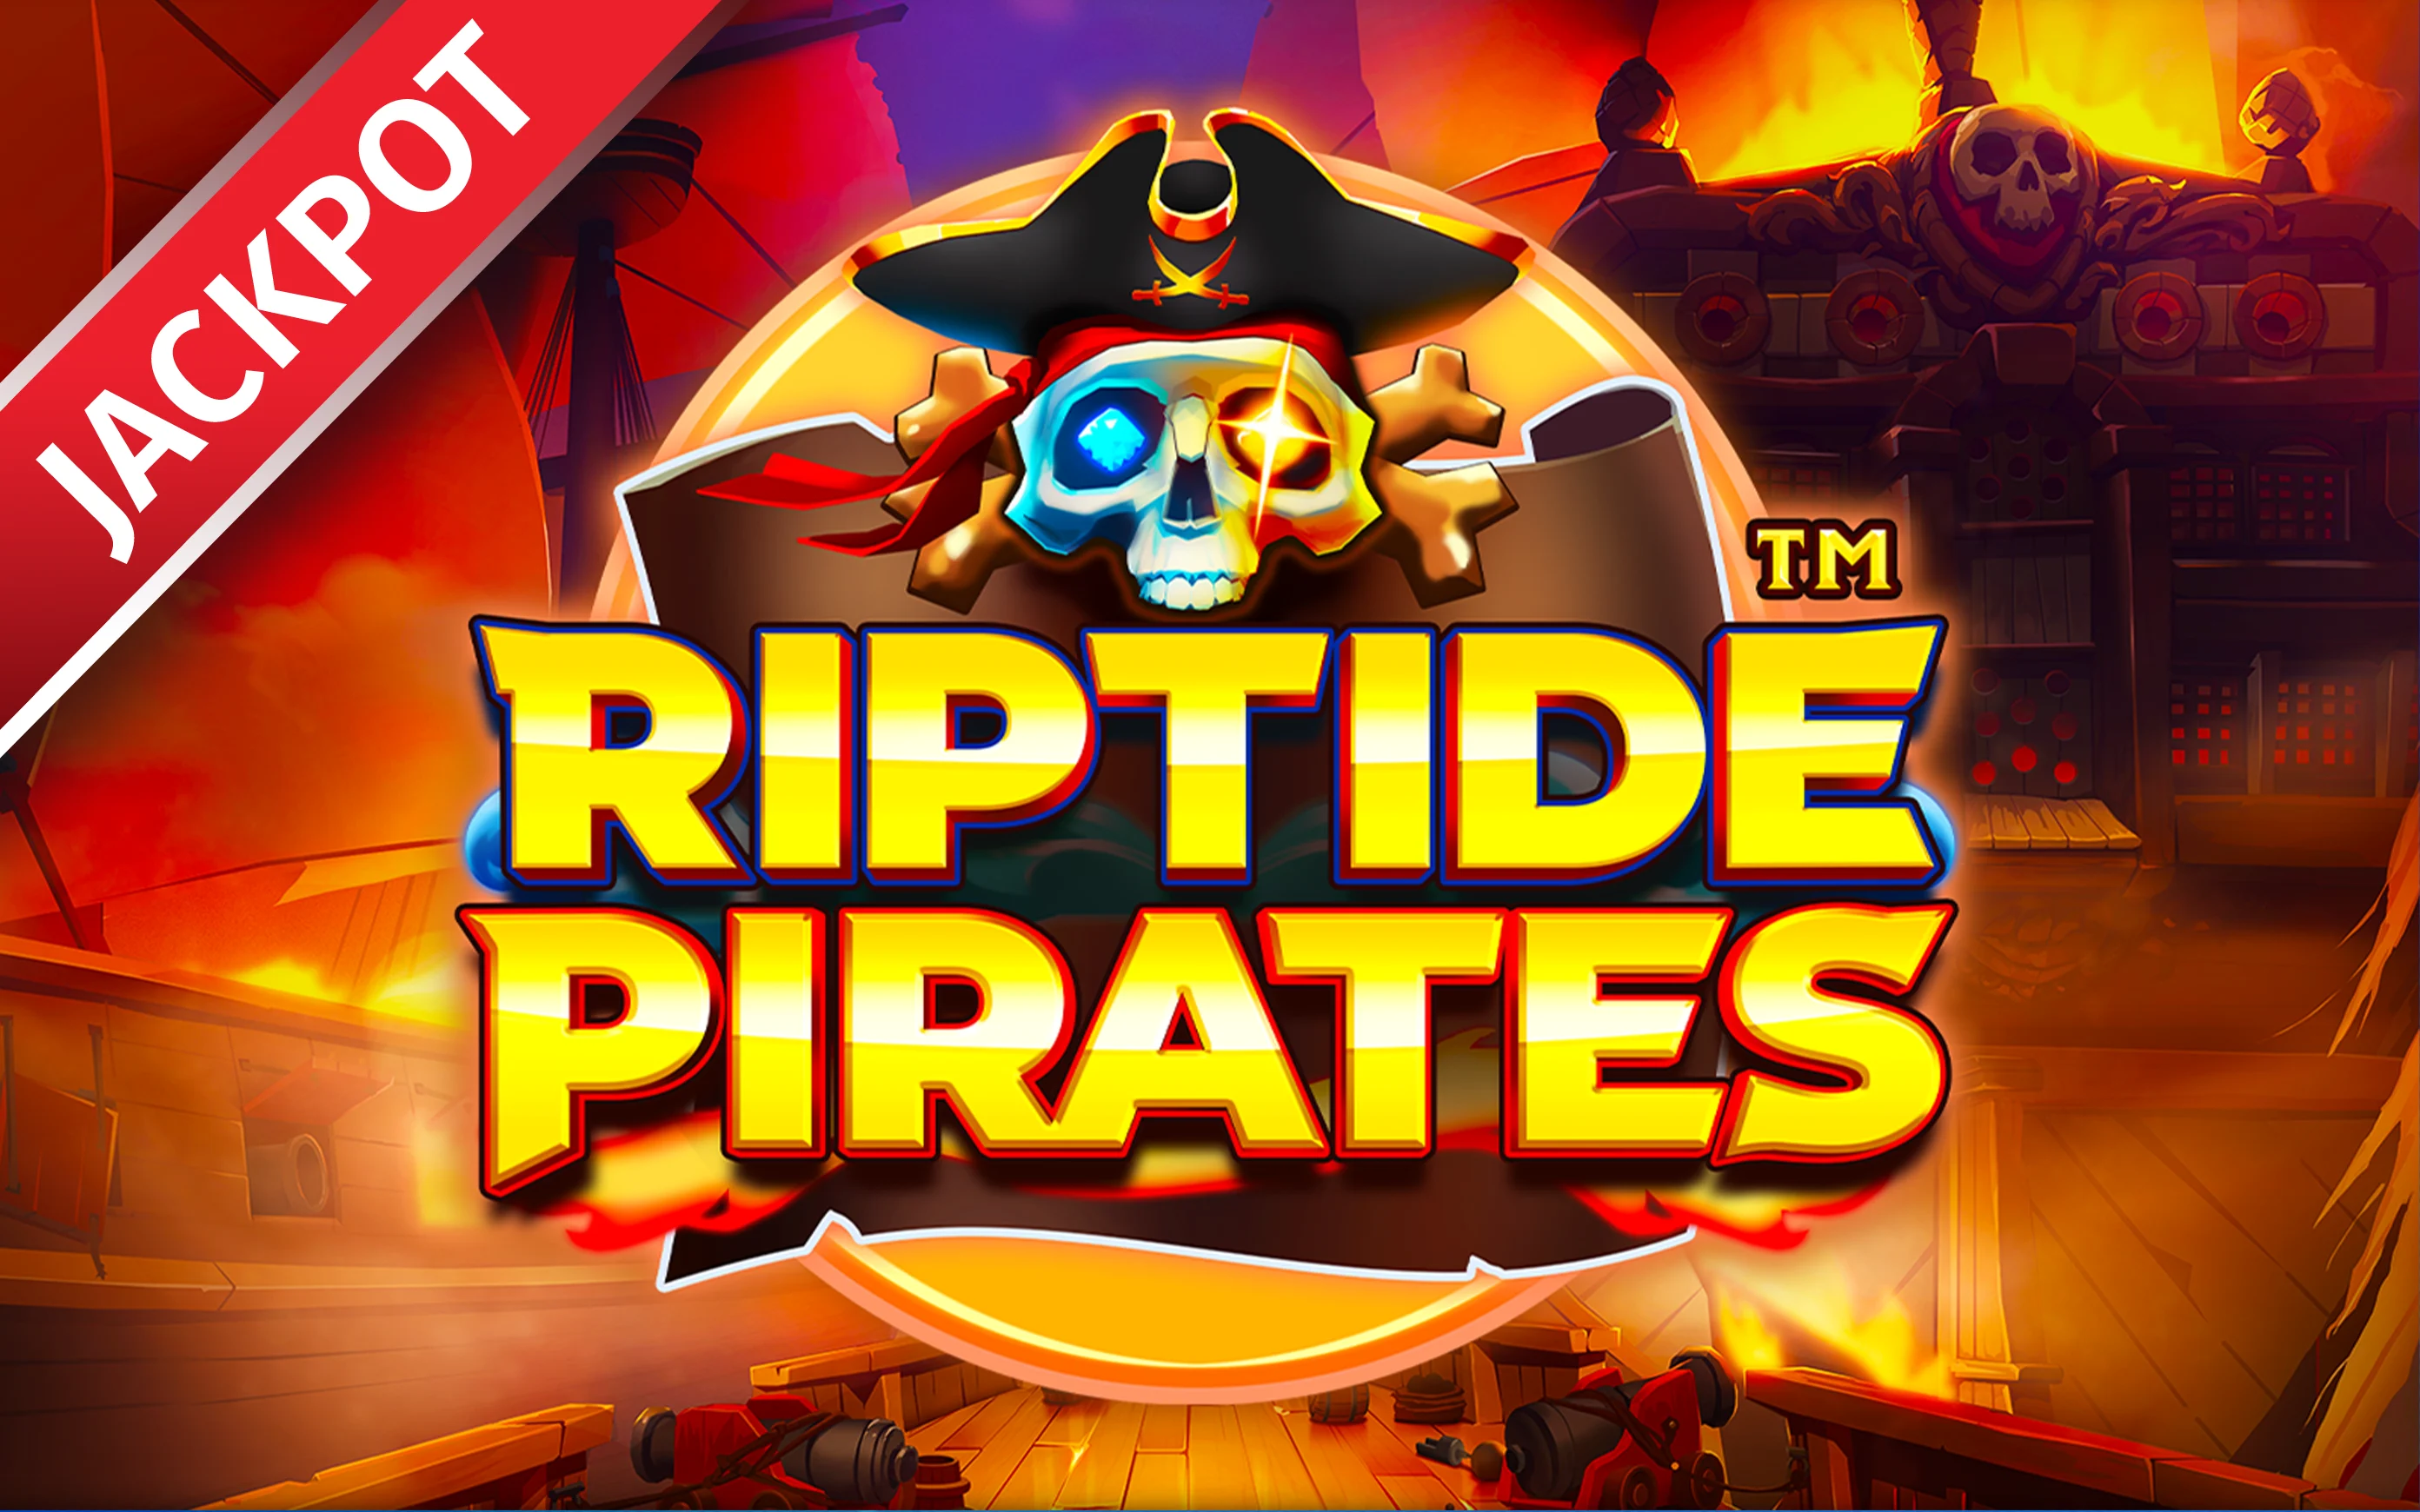 Zagraj w Riptide Pirates™ w kasynie online Starcasino.be